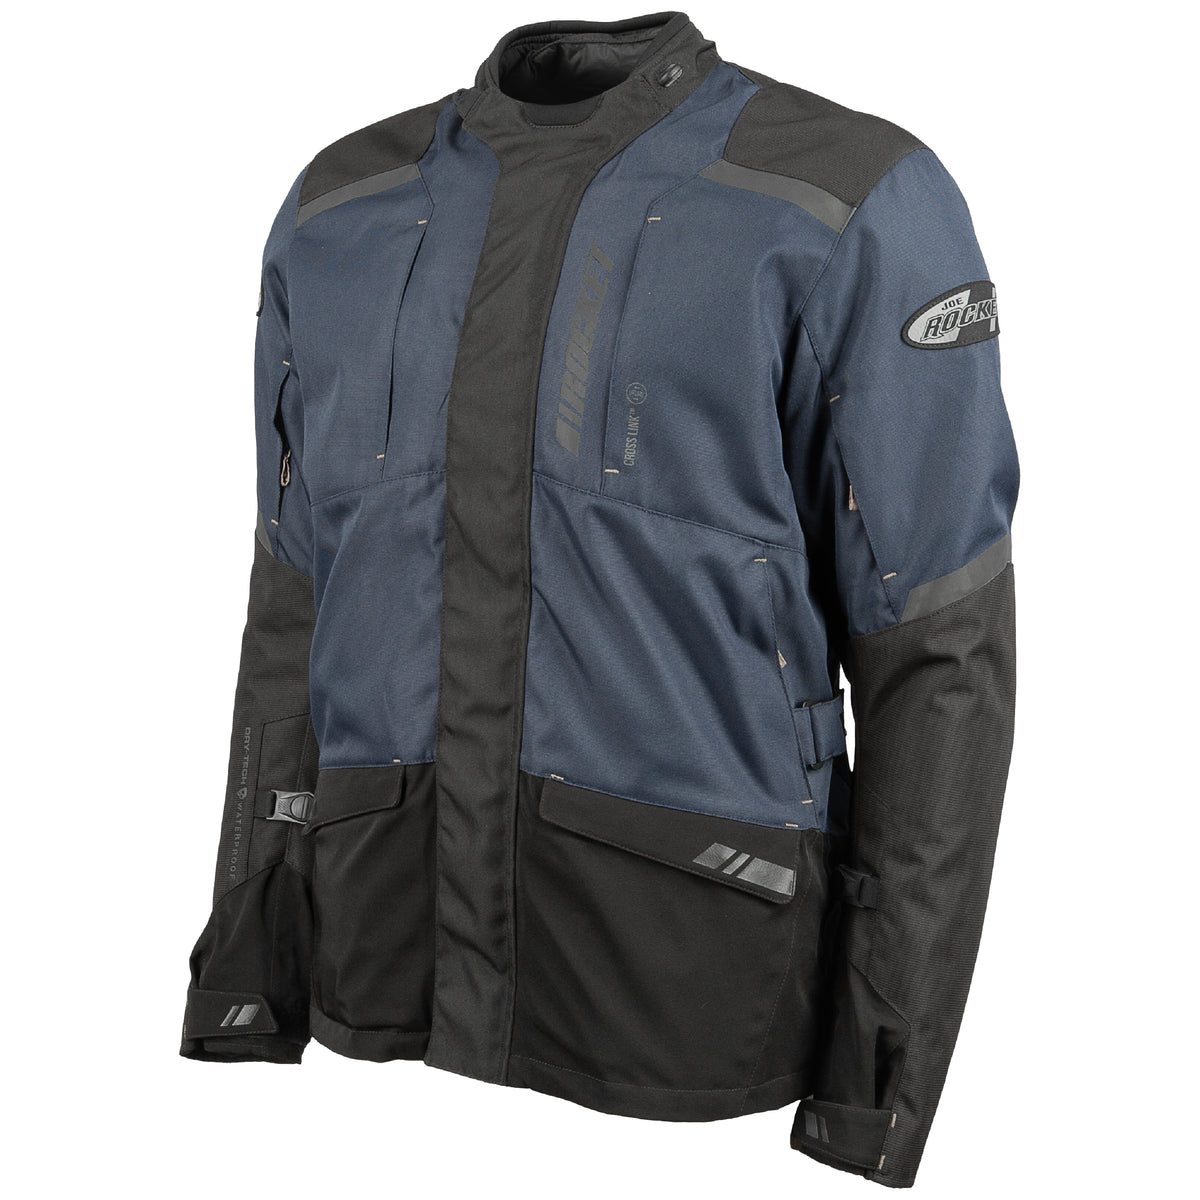 Ballistic™ 16.0 Waterproof Adventure Jacket